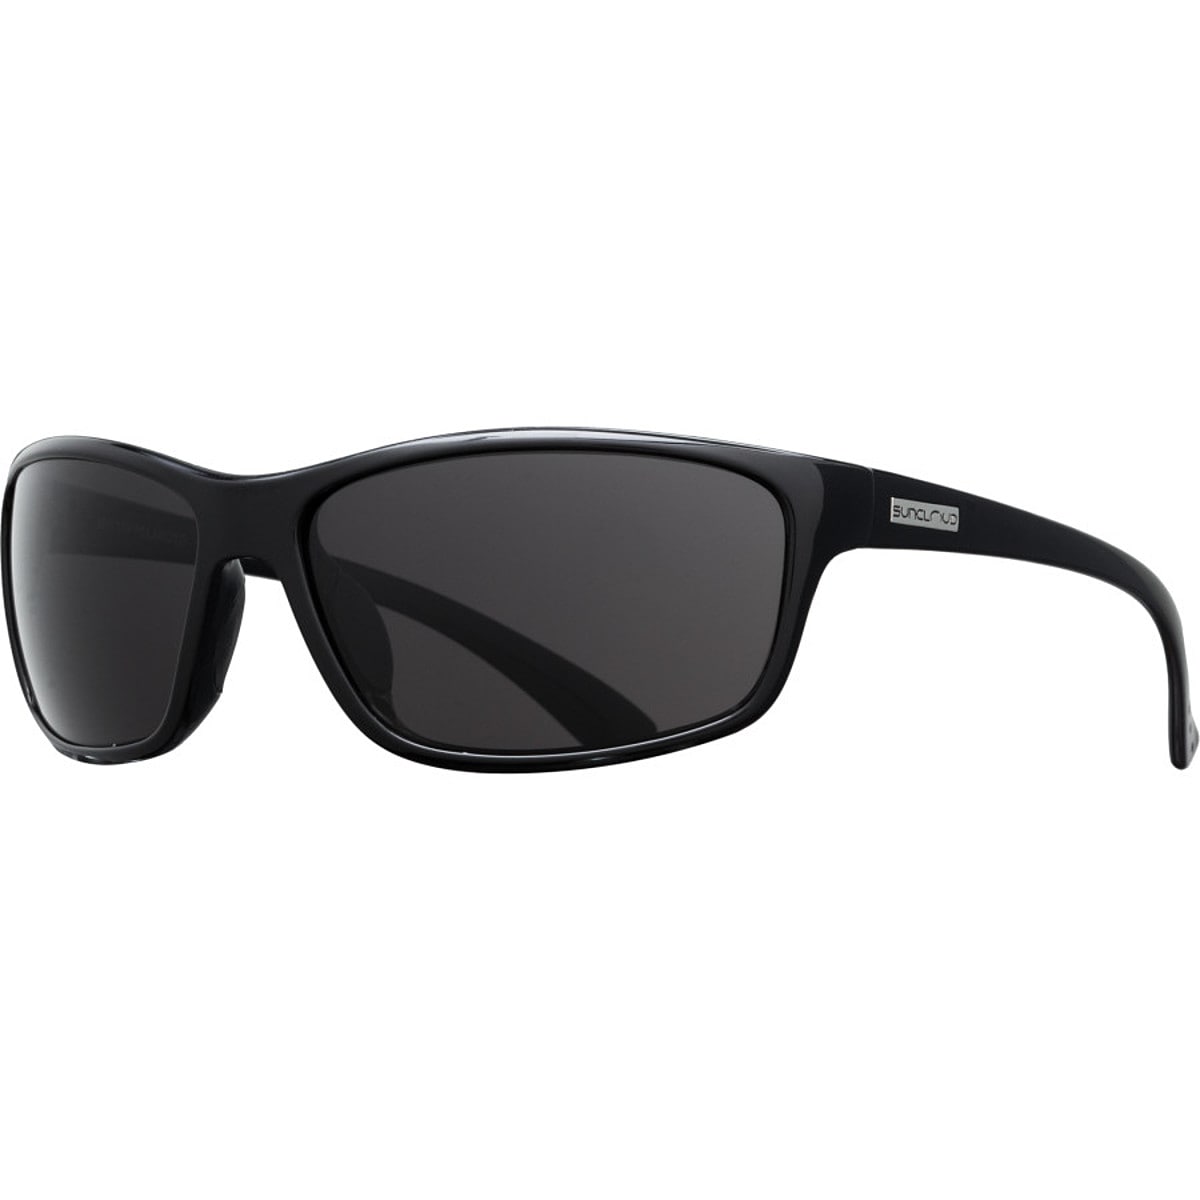 Поляризованные солнцезащитные очки sentry Suncloud Polarized Optics, цвет black/gray очки солнцезащитные stylemark polarized l1504a